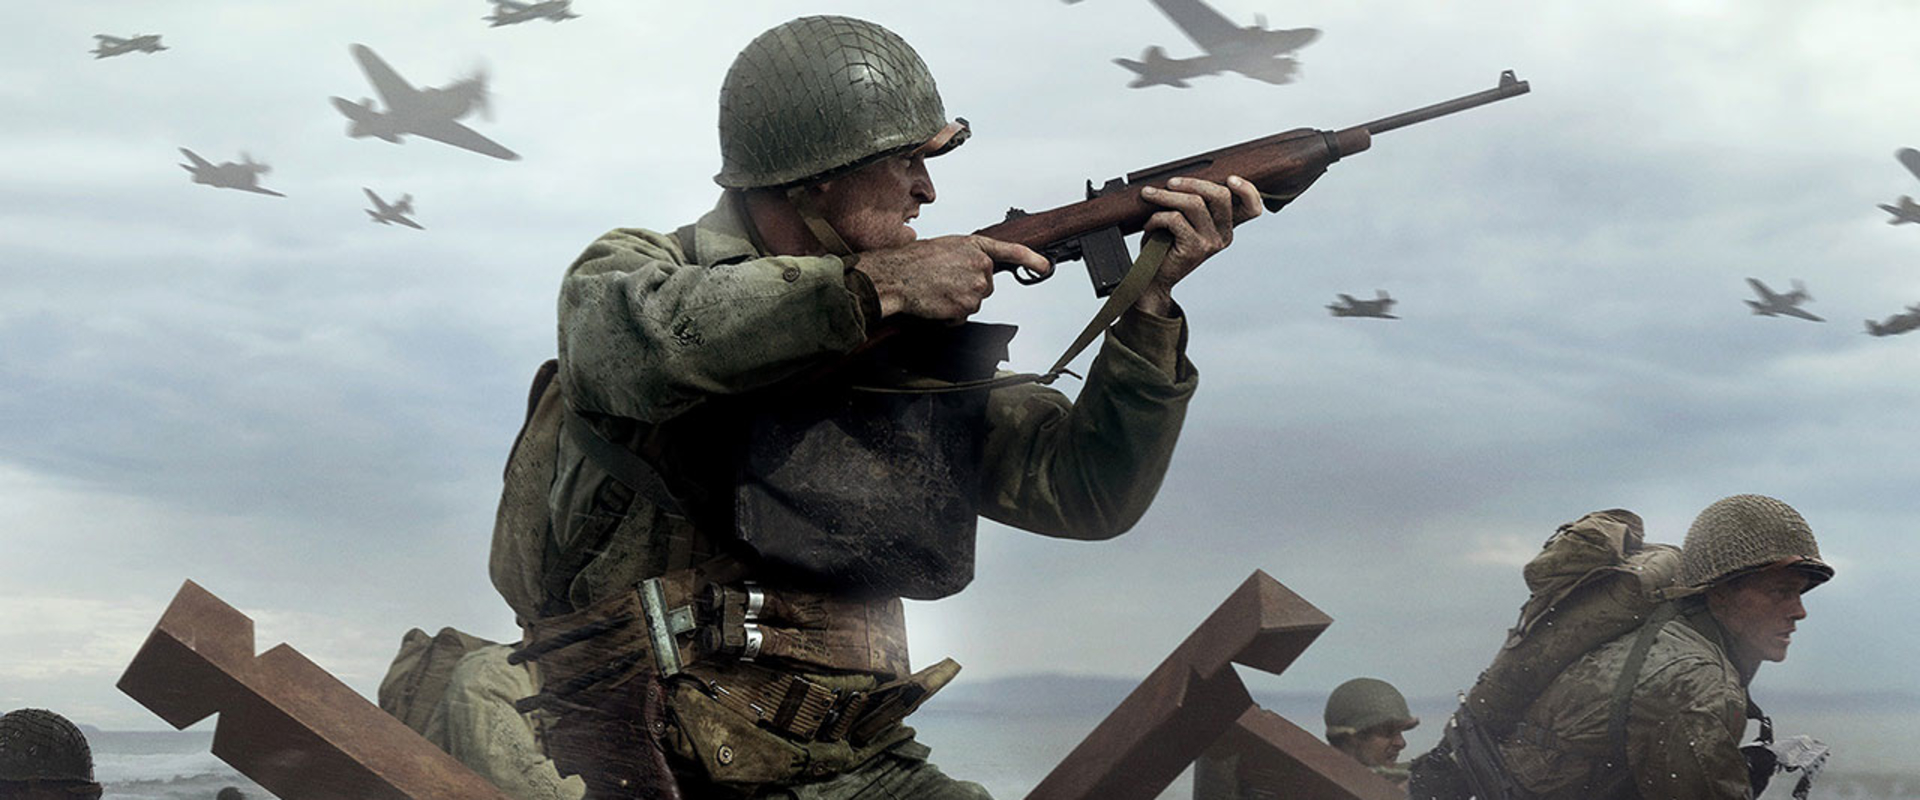 Szerezz minél több zsíros lootot a Call of Duty: WWII-ban!